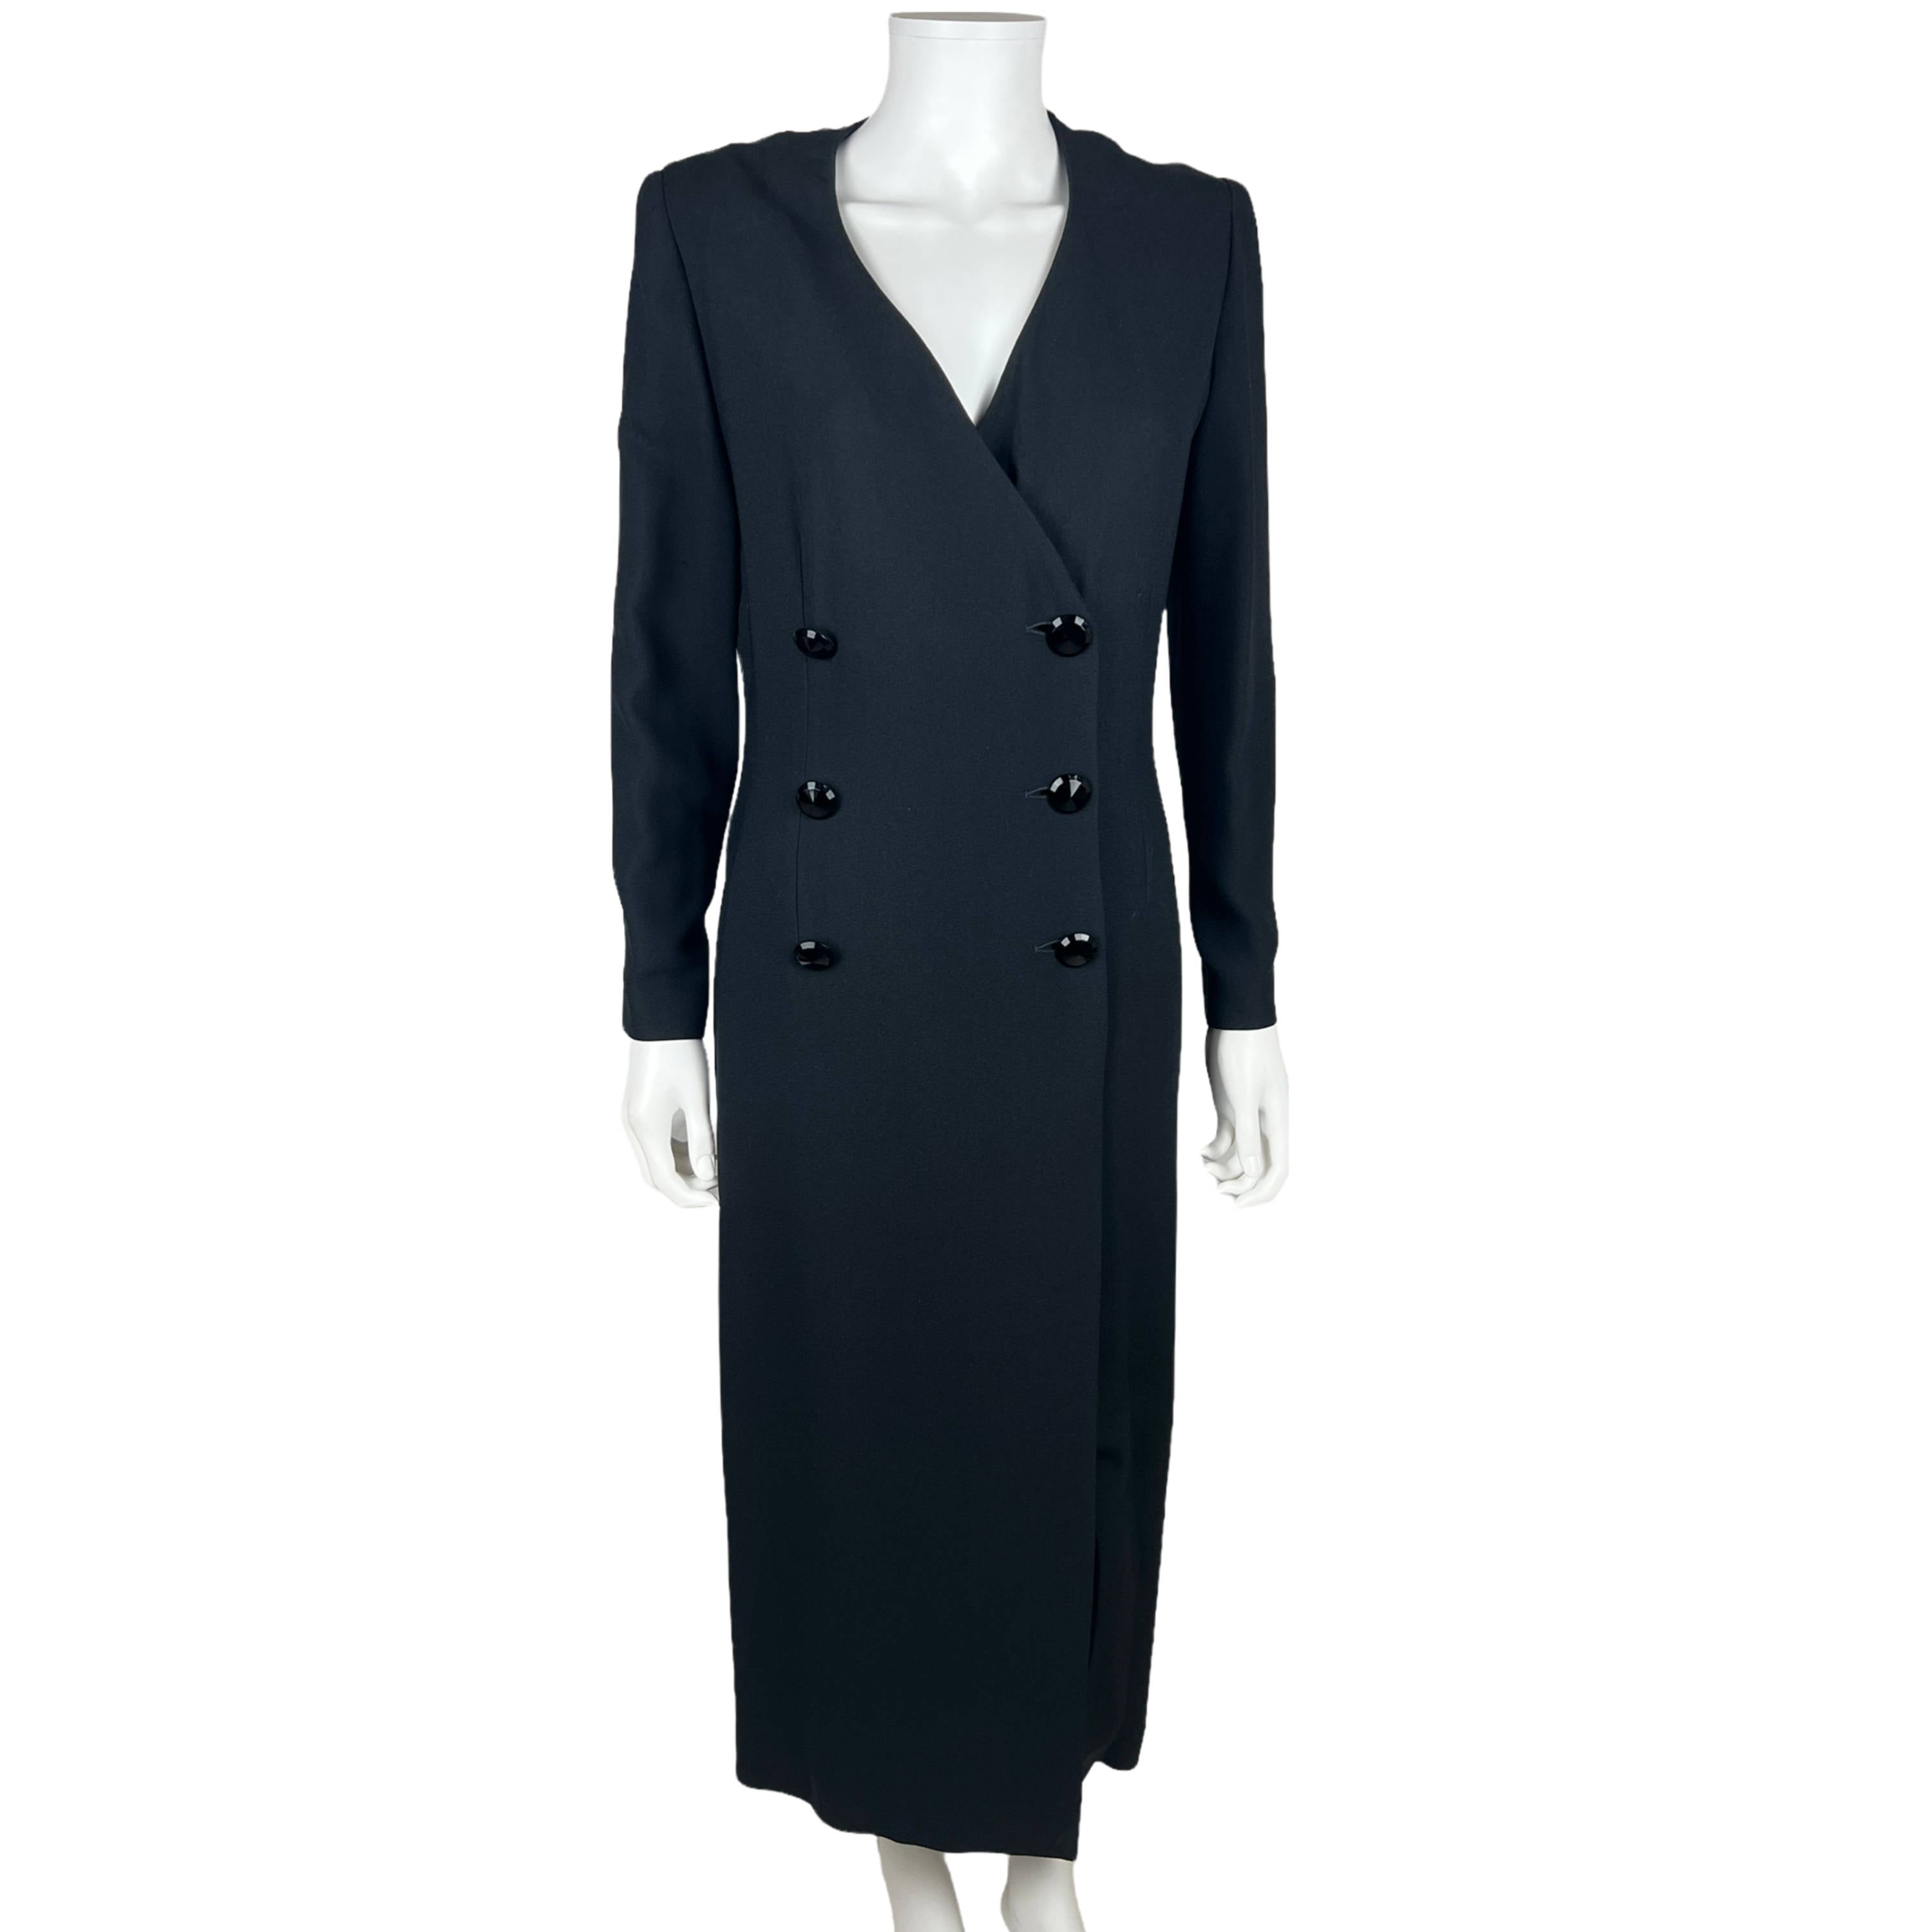 Vintage Jean Louis Scherrer Fashion: Bags, Dresses & More - 78 For Sale at  1stdibs, jean louis de paris coat,…